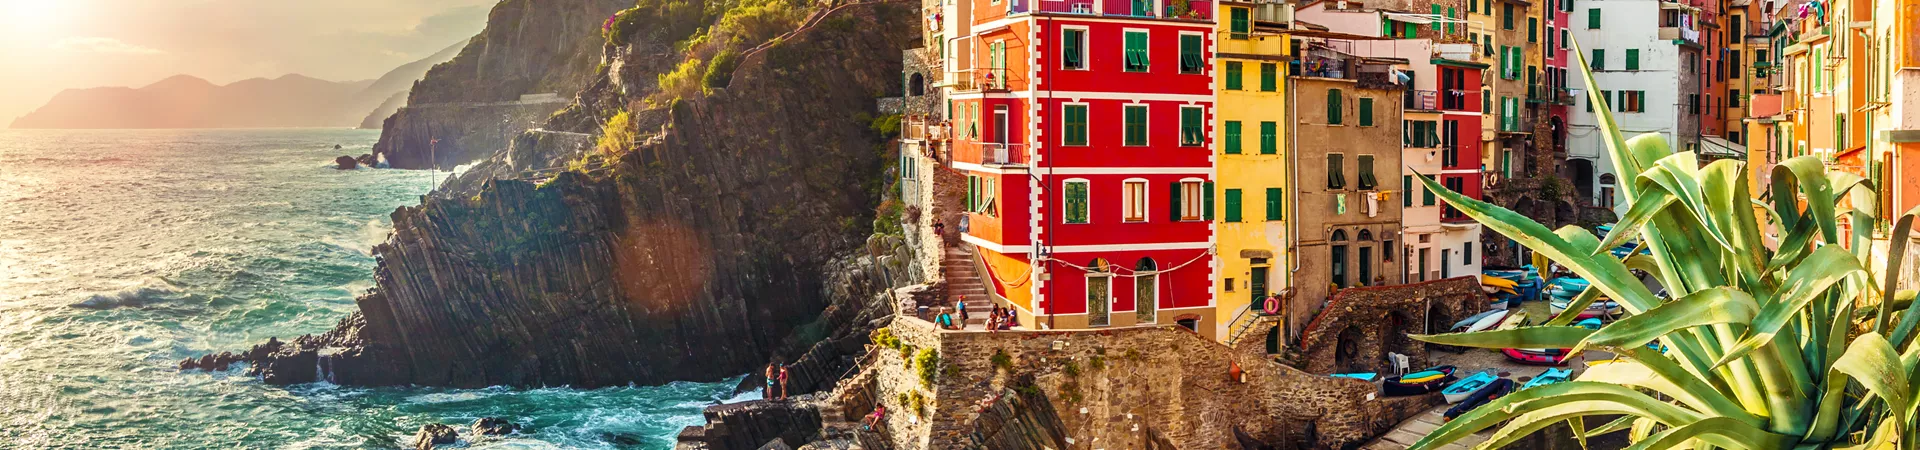 Riomaggiore, Cinque Terre, Italy 489139422